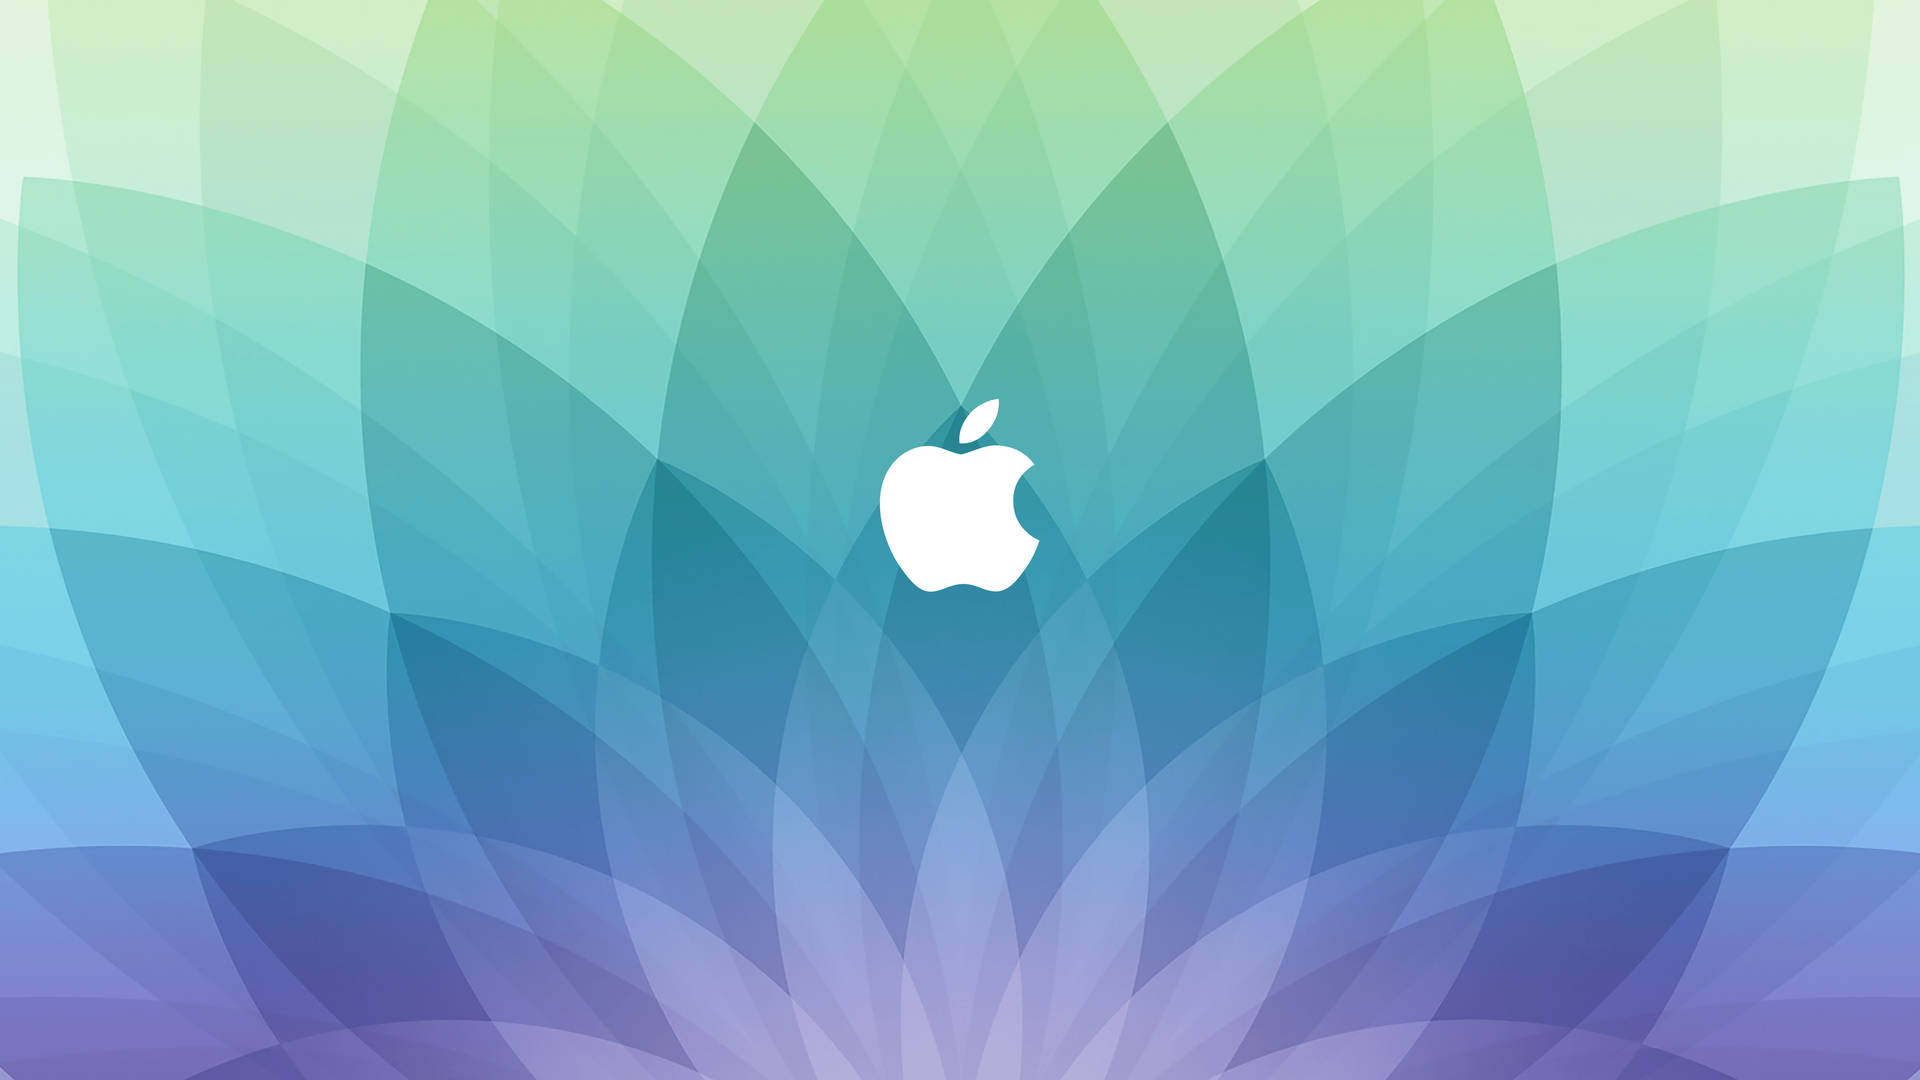 Apple Logo Spring Forward Flower Petals Background